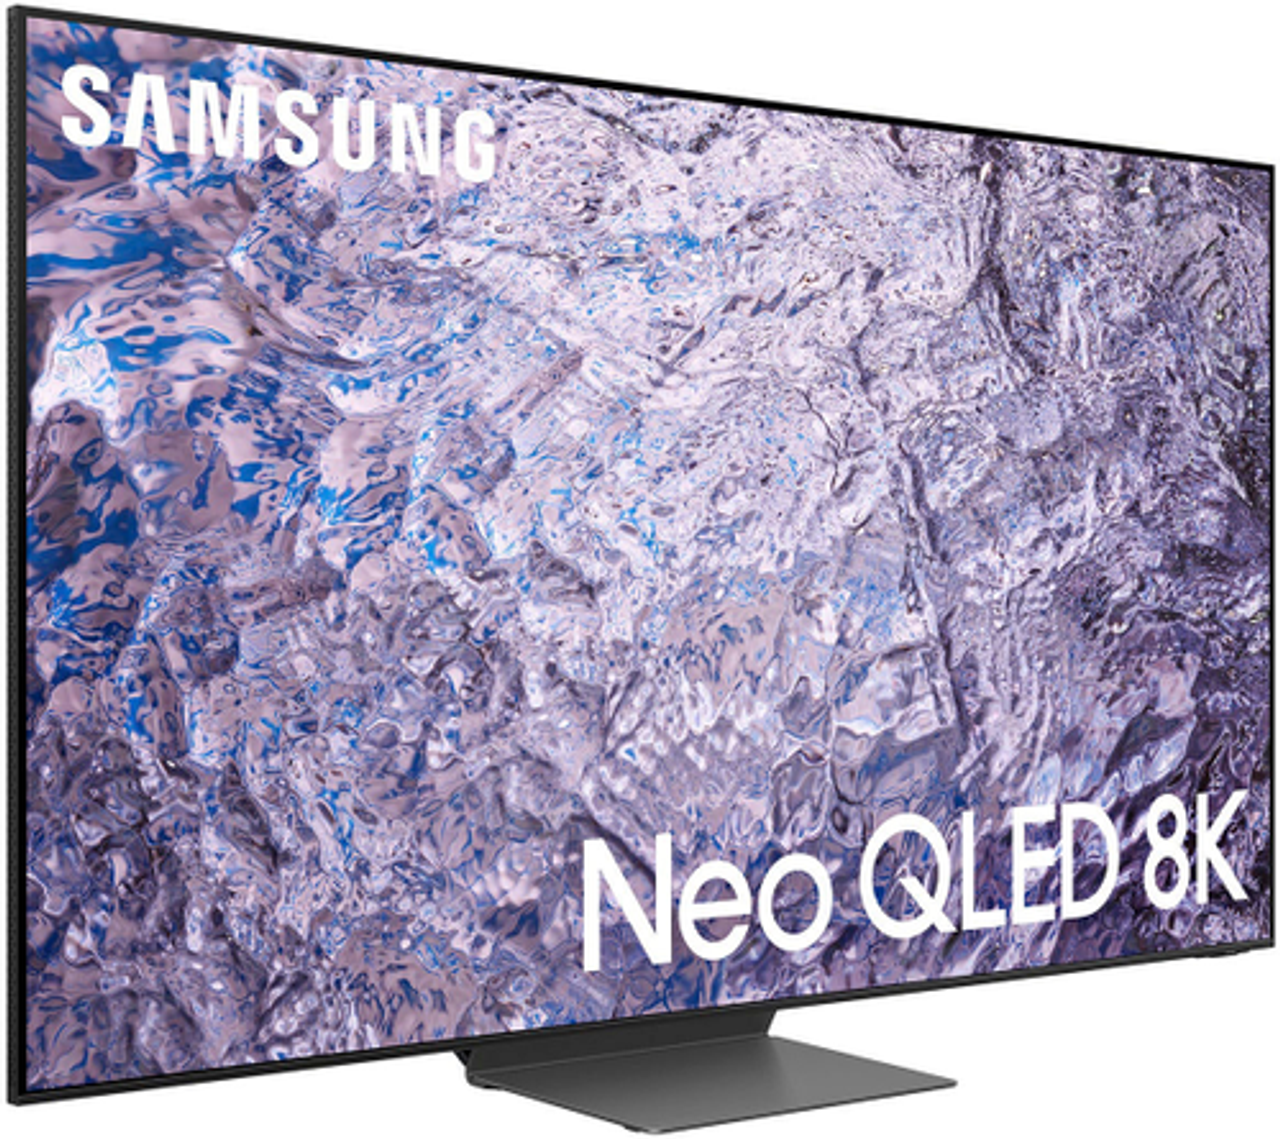 Samsung - 85" Class QN800C Neo QLED 8K Smart Tizen TV